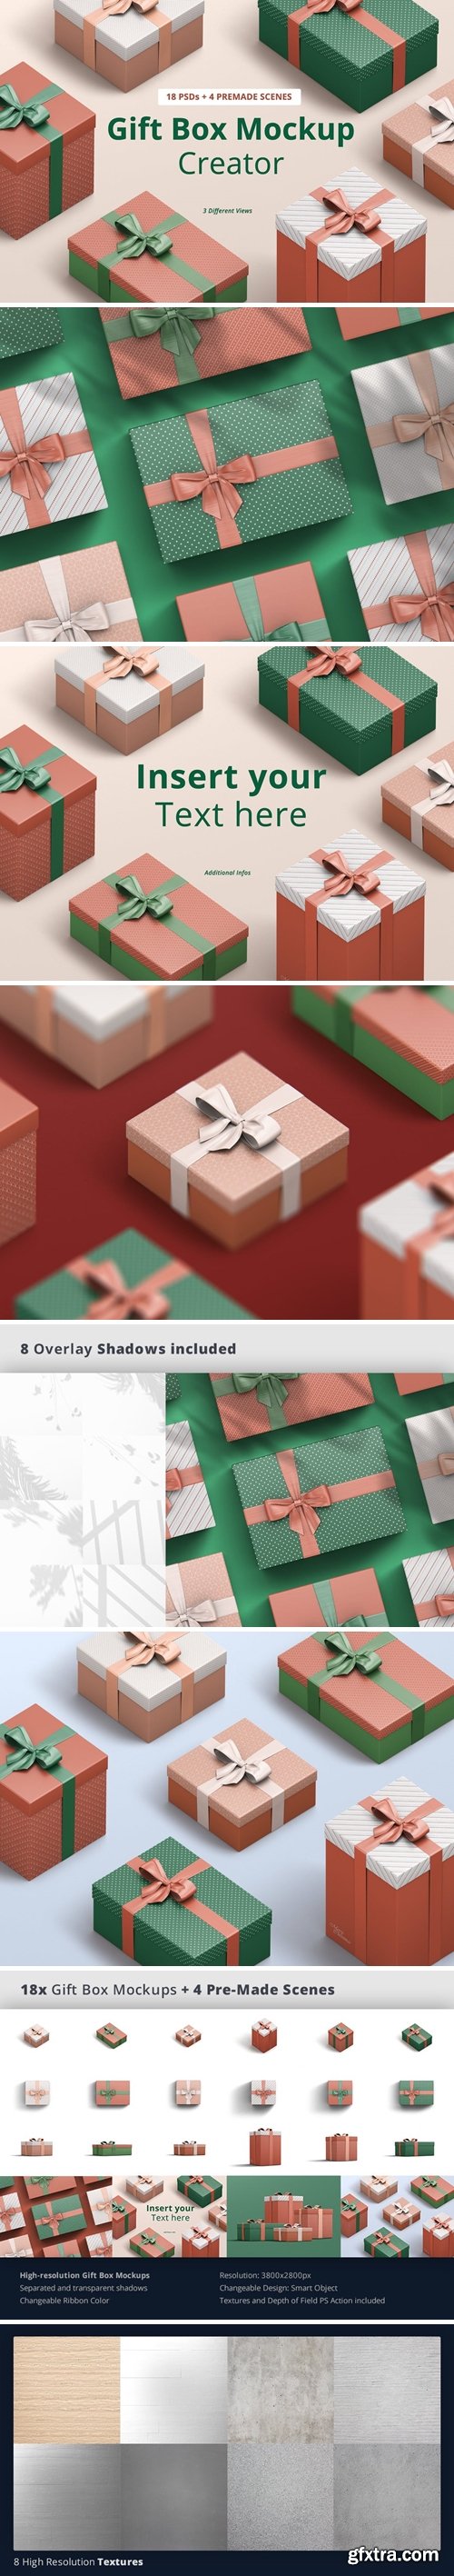 Graphicriver - Gift Box Mockup Creator 35462633